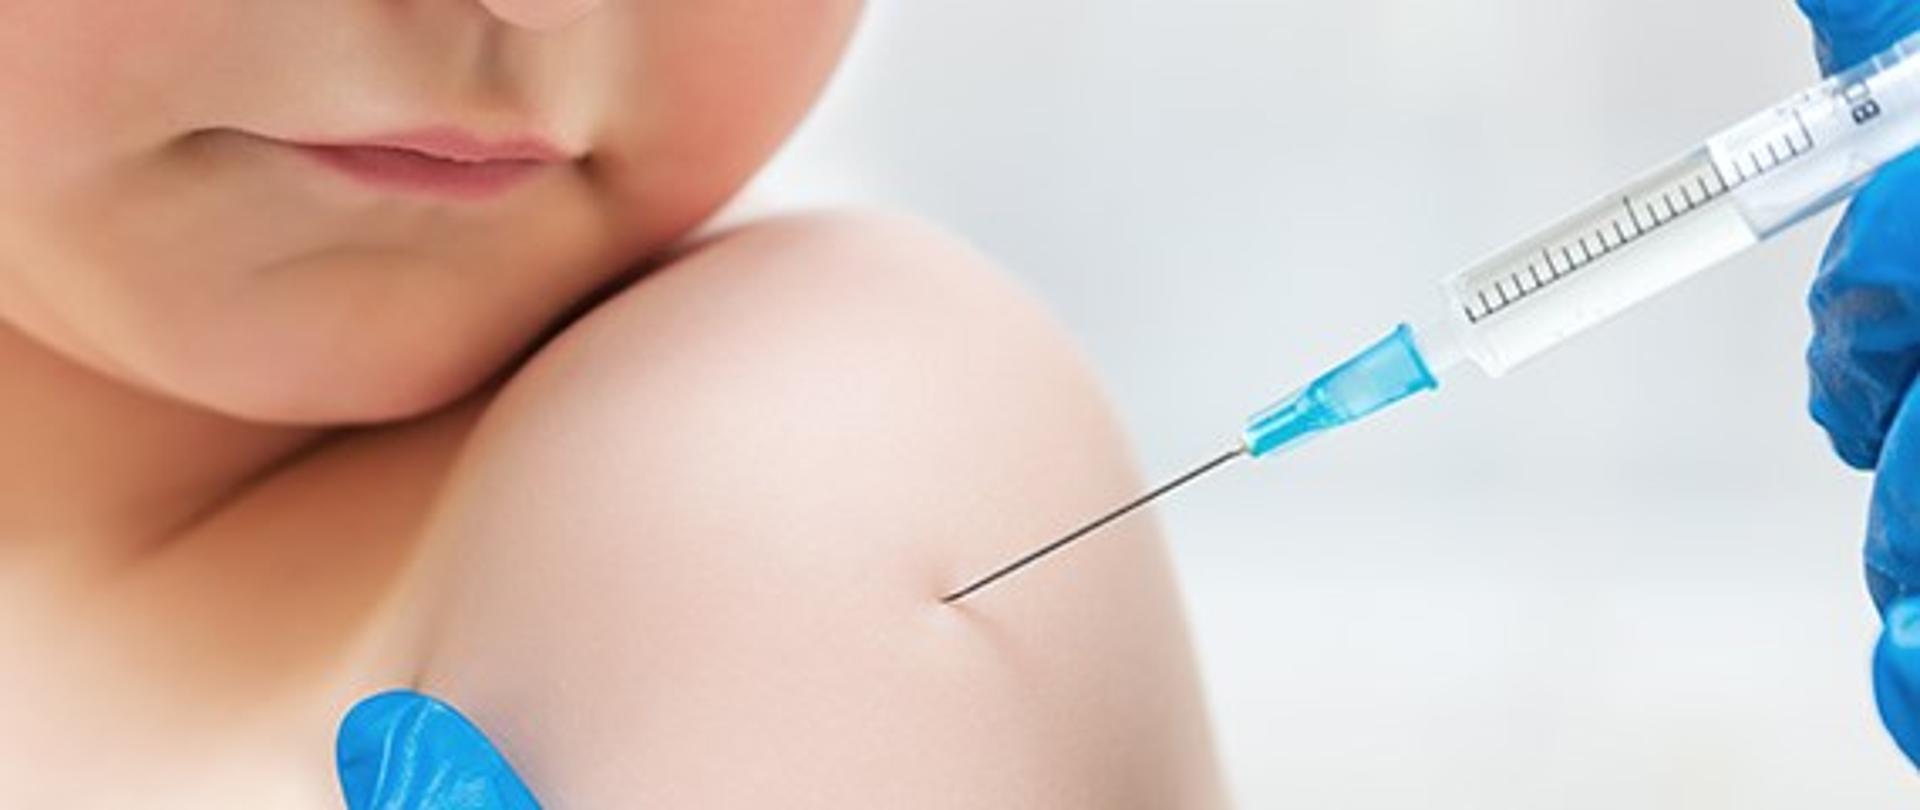 Na obrazku widoczne jest dziecko (ramie i część twarzy- broda i usta) podczas szczepienia. Pielęgniarka w niebieskich rękawiczkach Widoczne tylko dłonie) wstrzykująca szczepionkę.